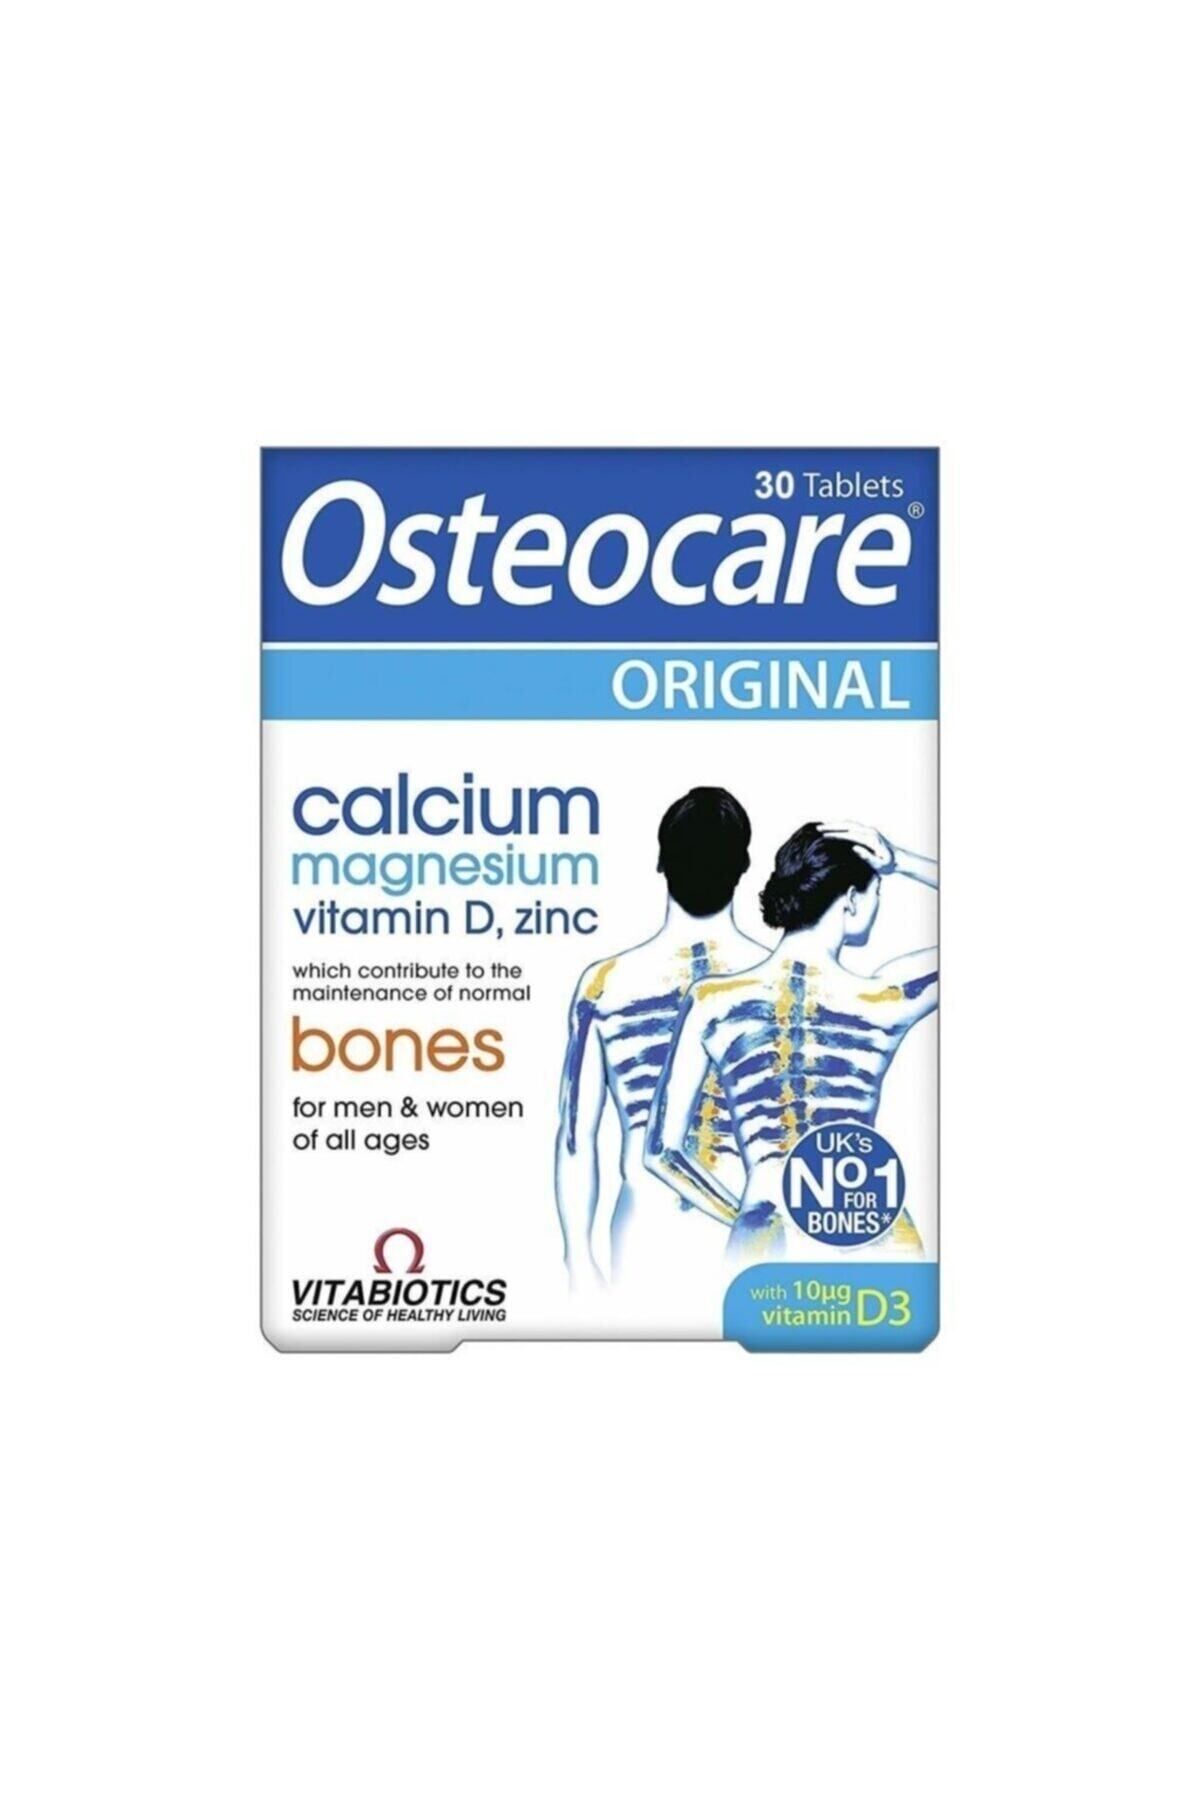 Osteocare 30 Tablet Calcium Magnesium Vitamin D Zinc